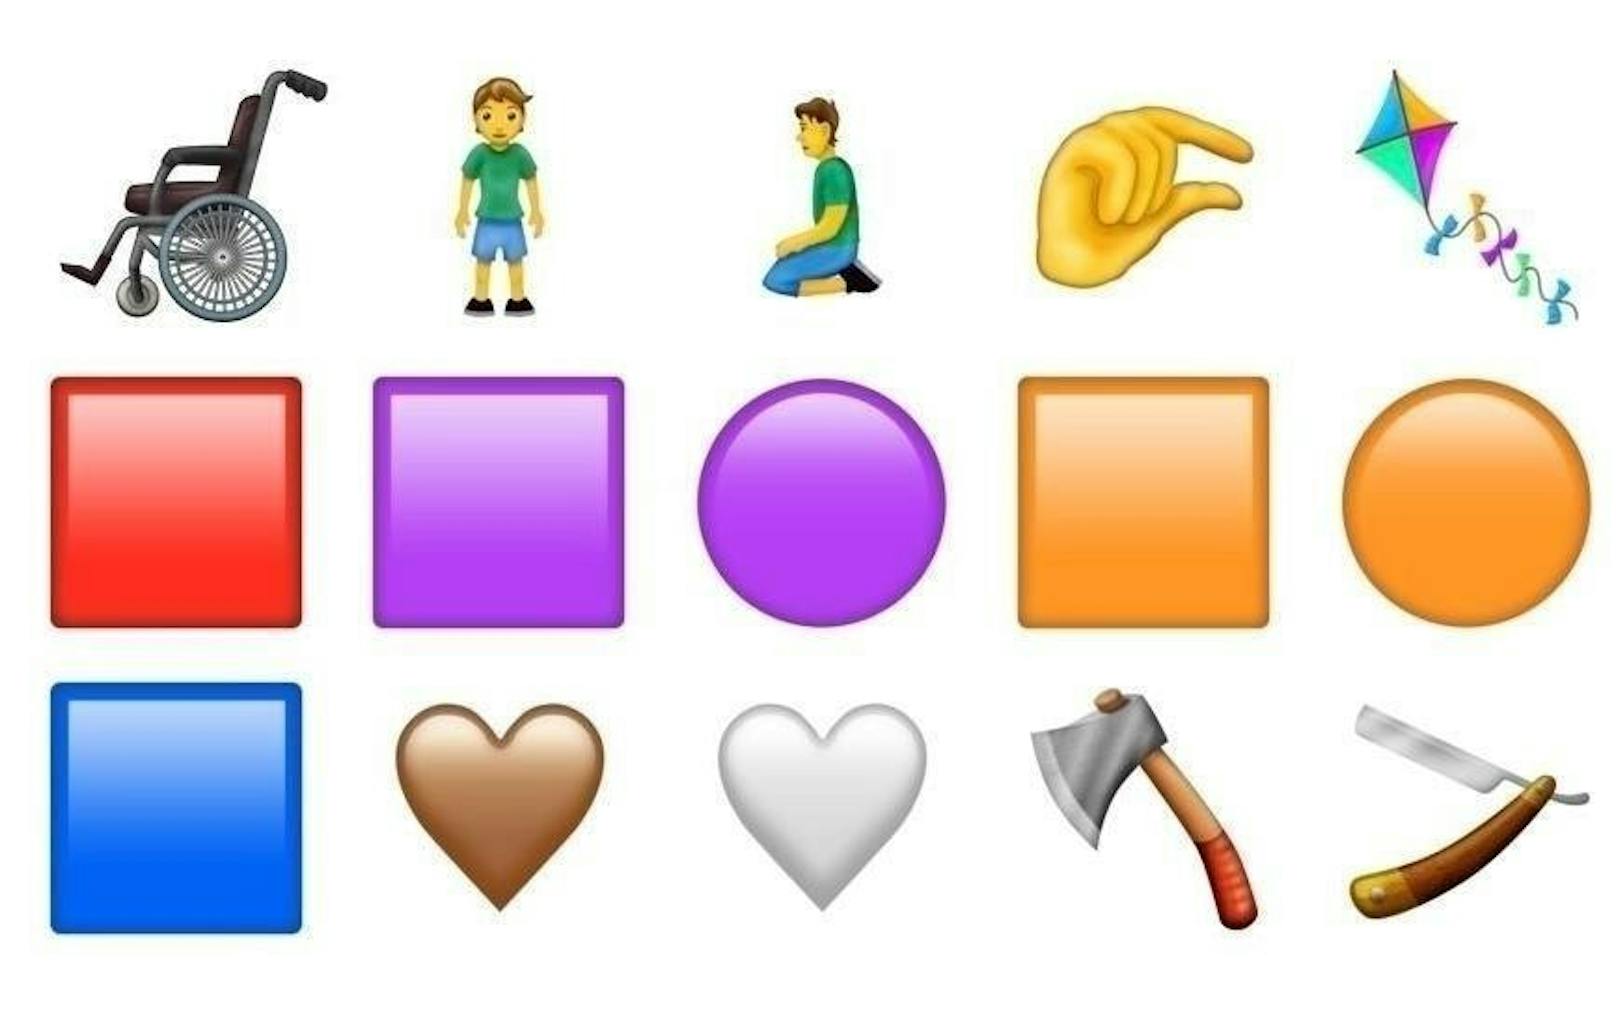 Bei den weiteren Emoji-Entwürfen sind auch eine Axt und ein Rasiermesser mit dabei.